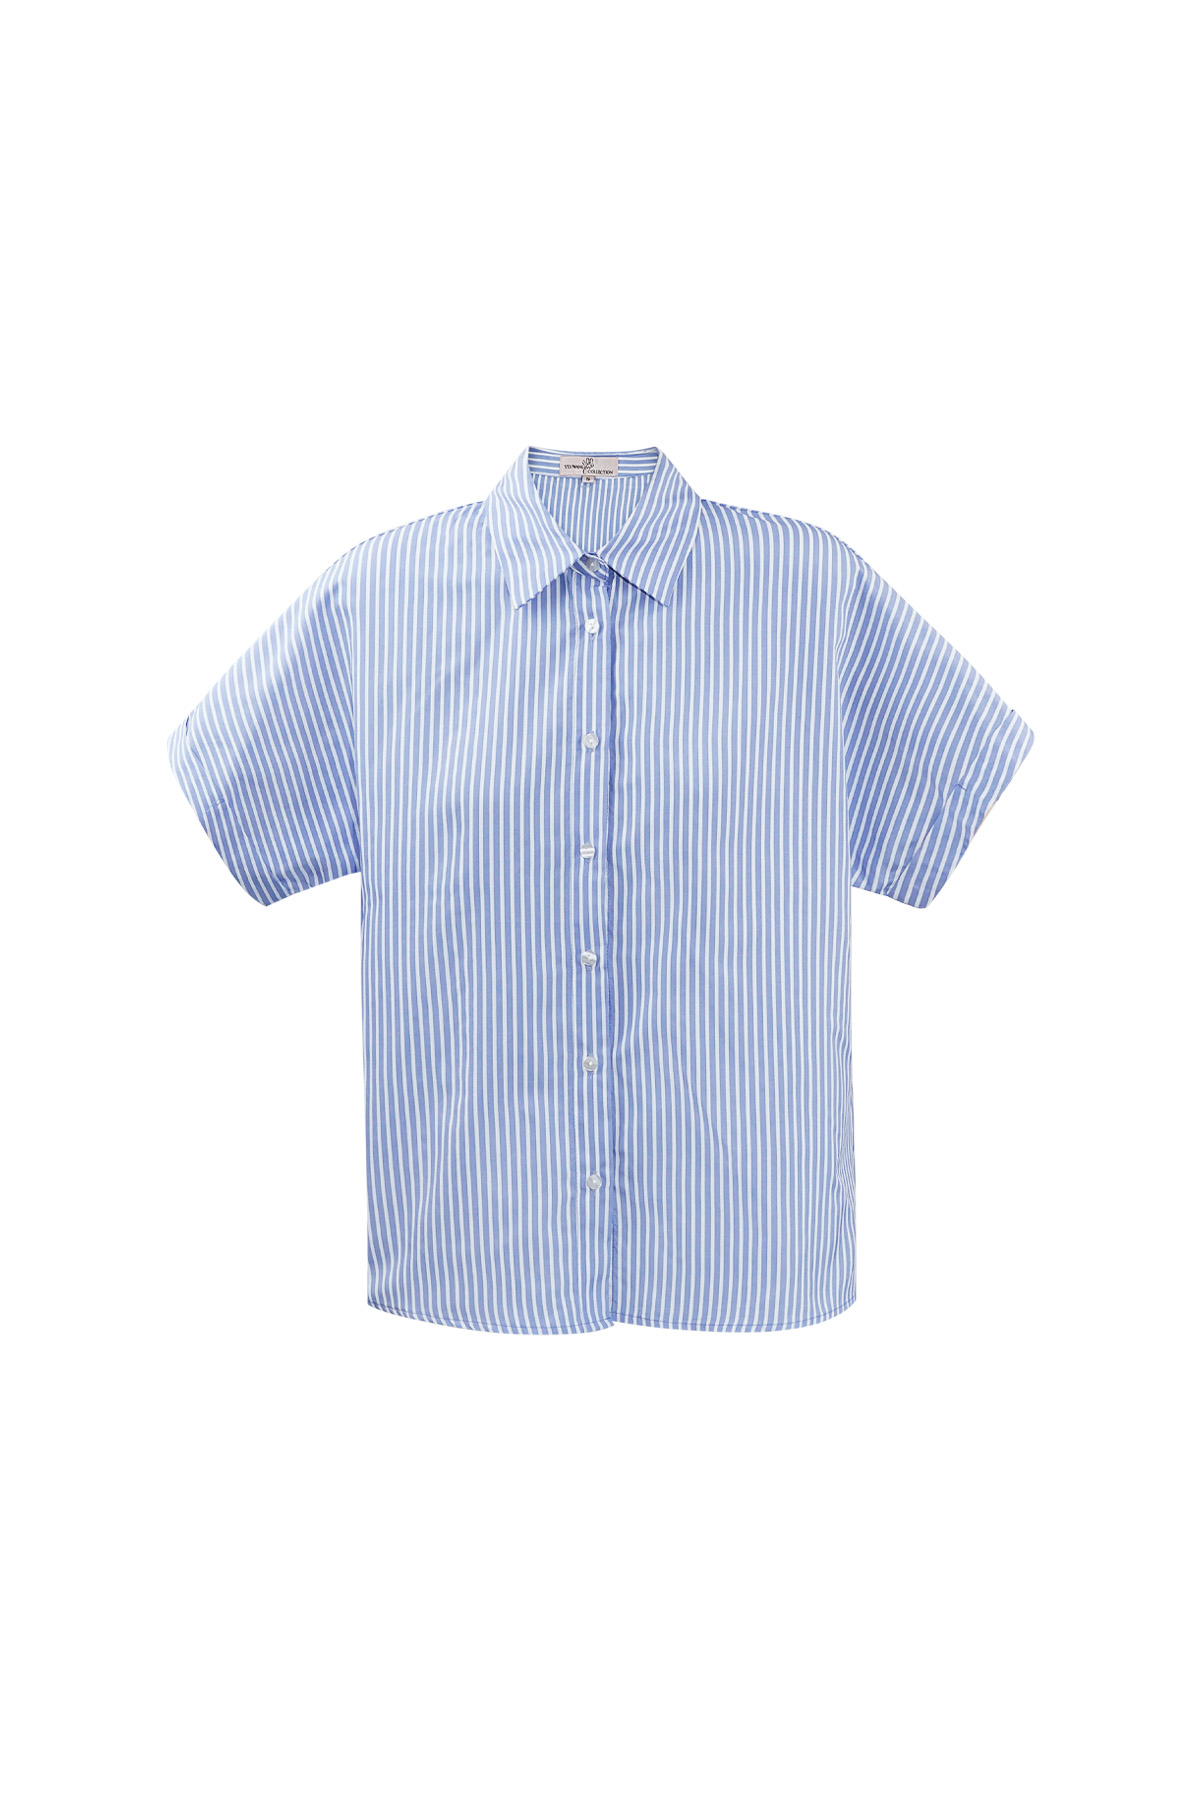 Blusa de rayas con manga corta - azul claro 